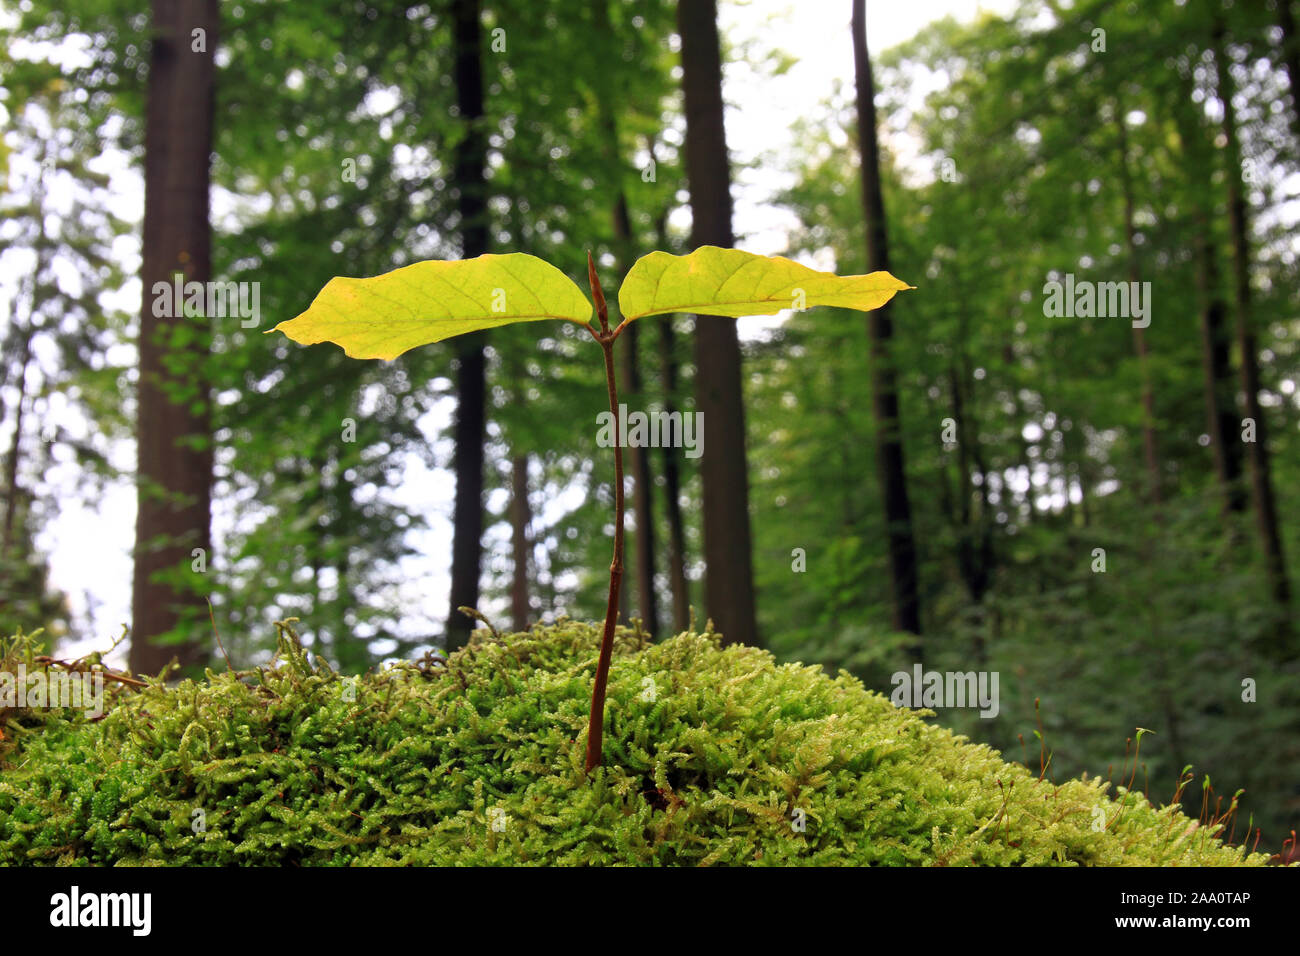 Moospolster Buchenkeimling steht auf einem, Symbolbild Naturwald für natürliche Waldbewirtschaftung, Naturverjüngung, CO², Speicher Wald Banque D'Images